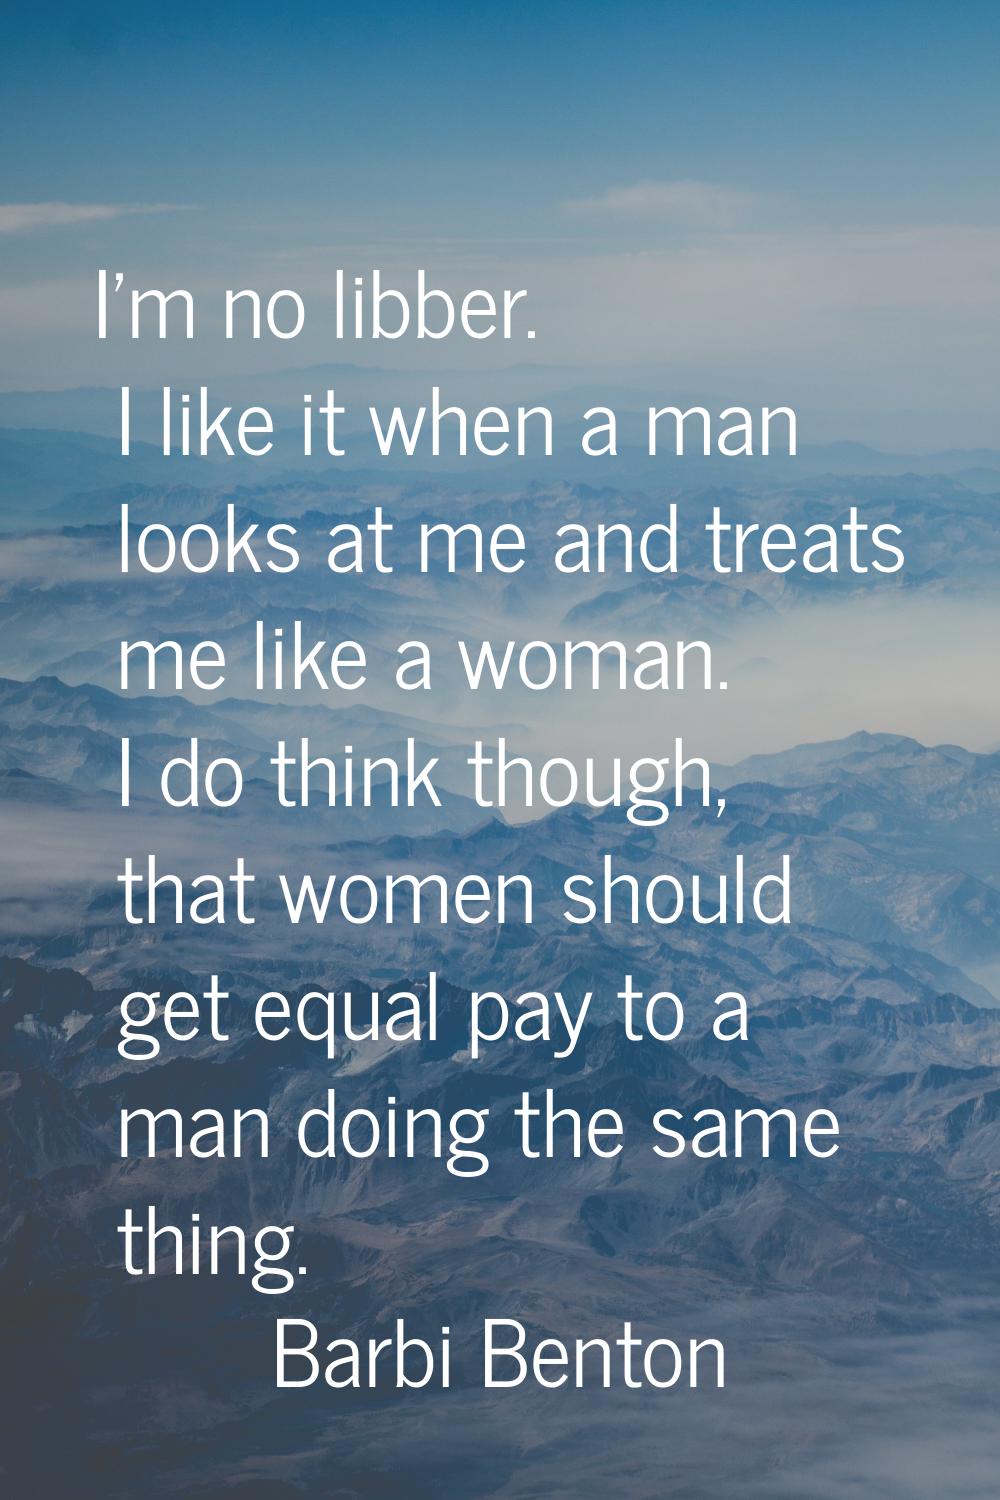 I'm no libber. I like it when a man looks at me and treats me like a woman. I do think though, that